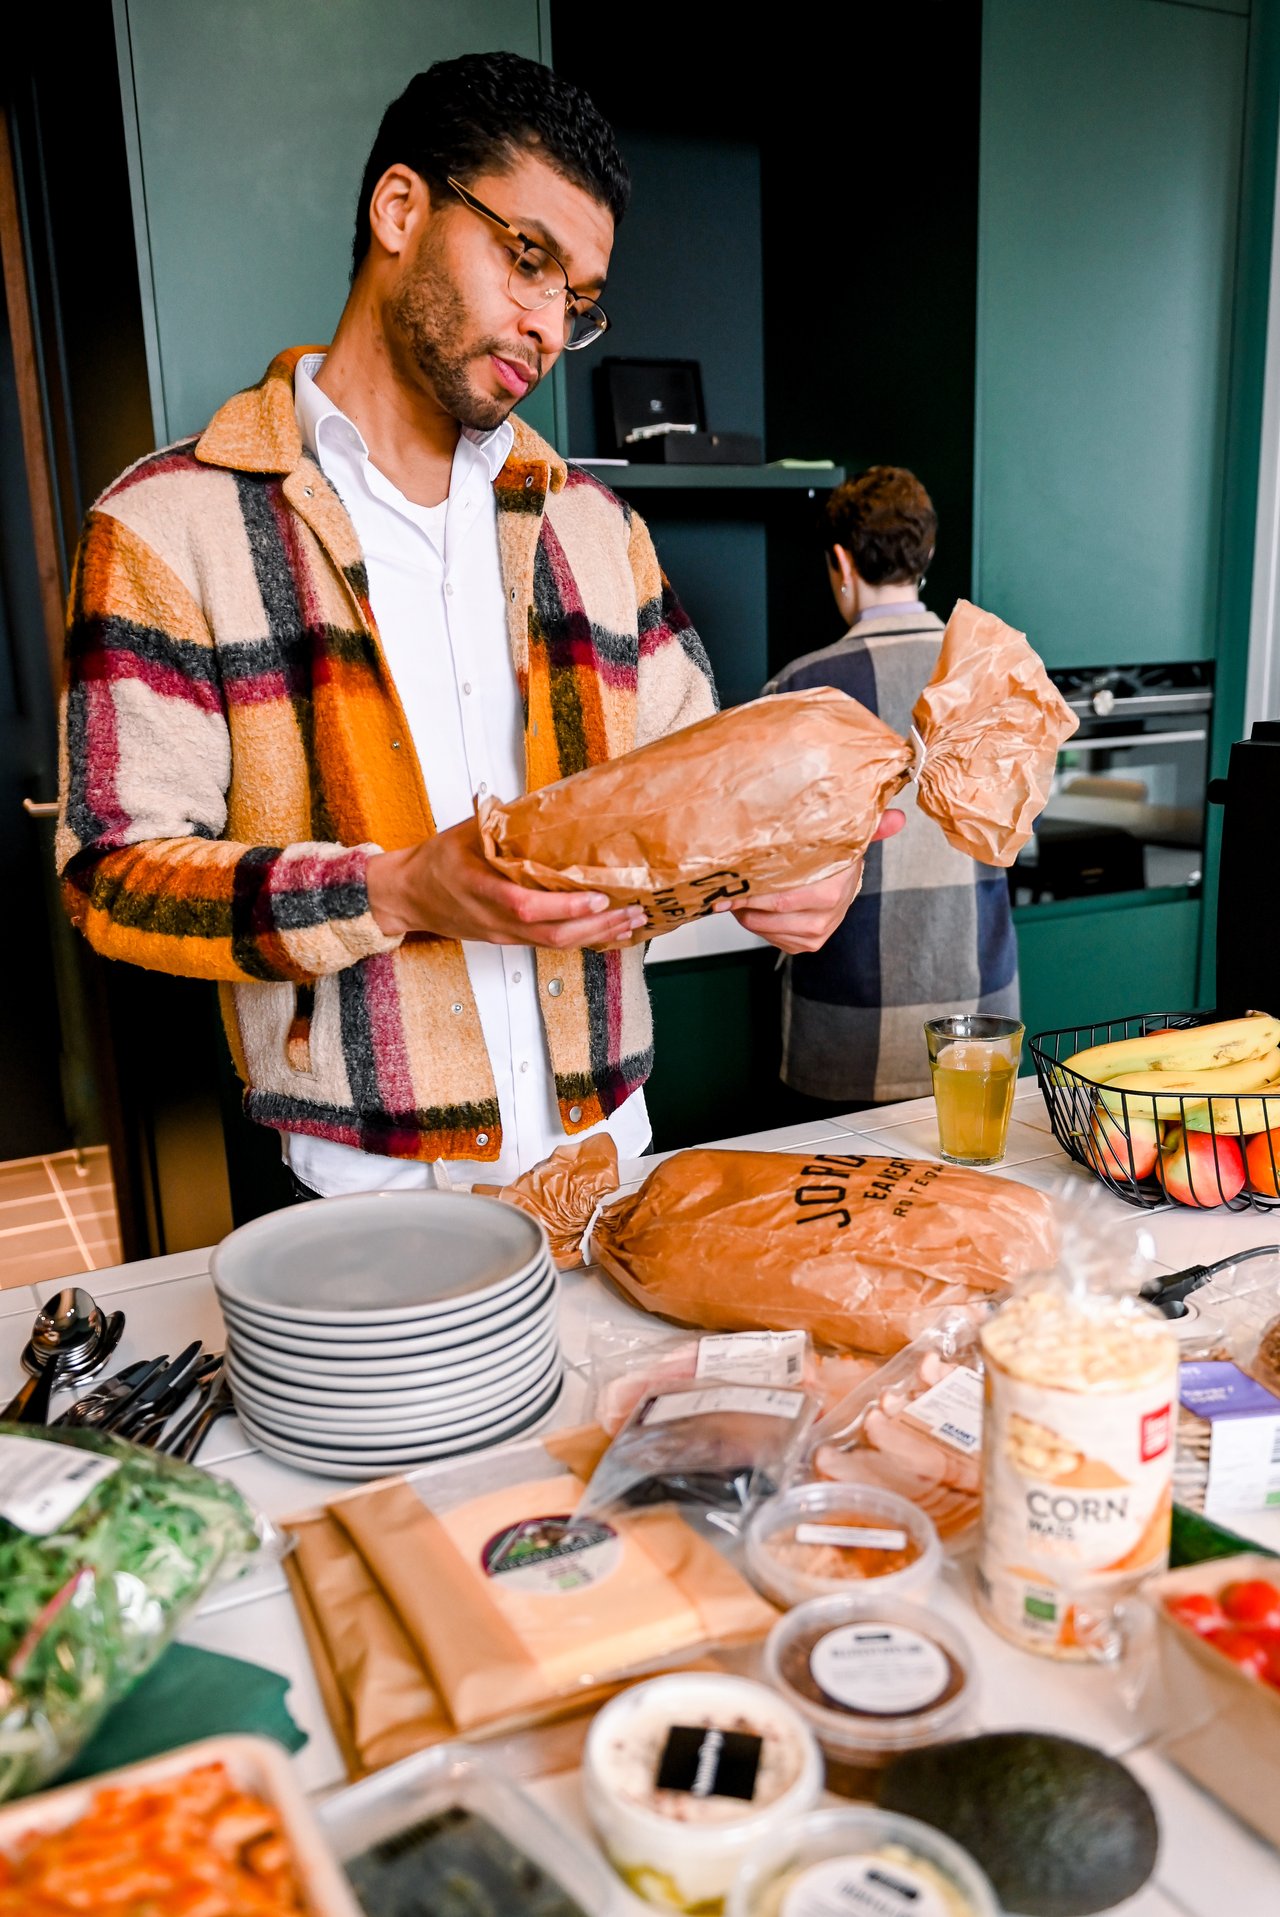 Ontbijt, lunch & borrel regelen voor je in samenwerking met lokale en impact gedreven ondernemers